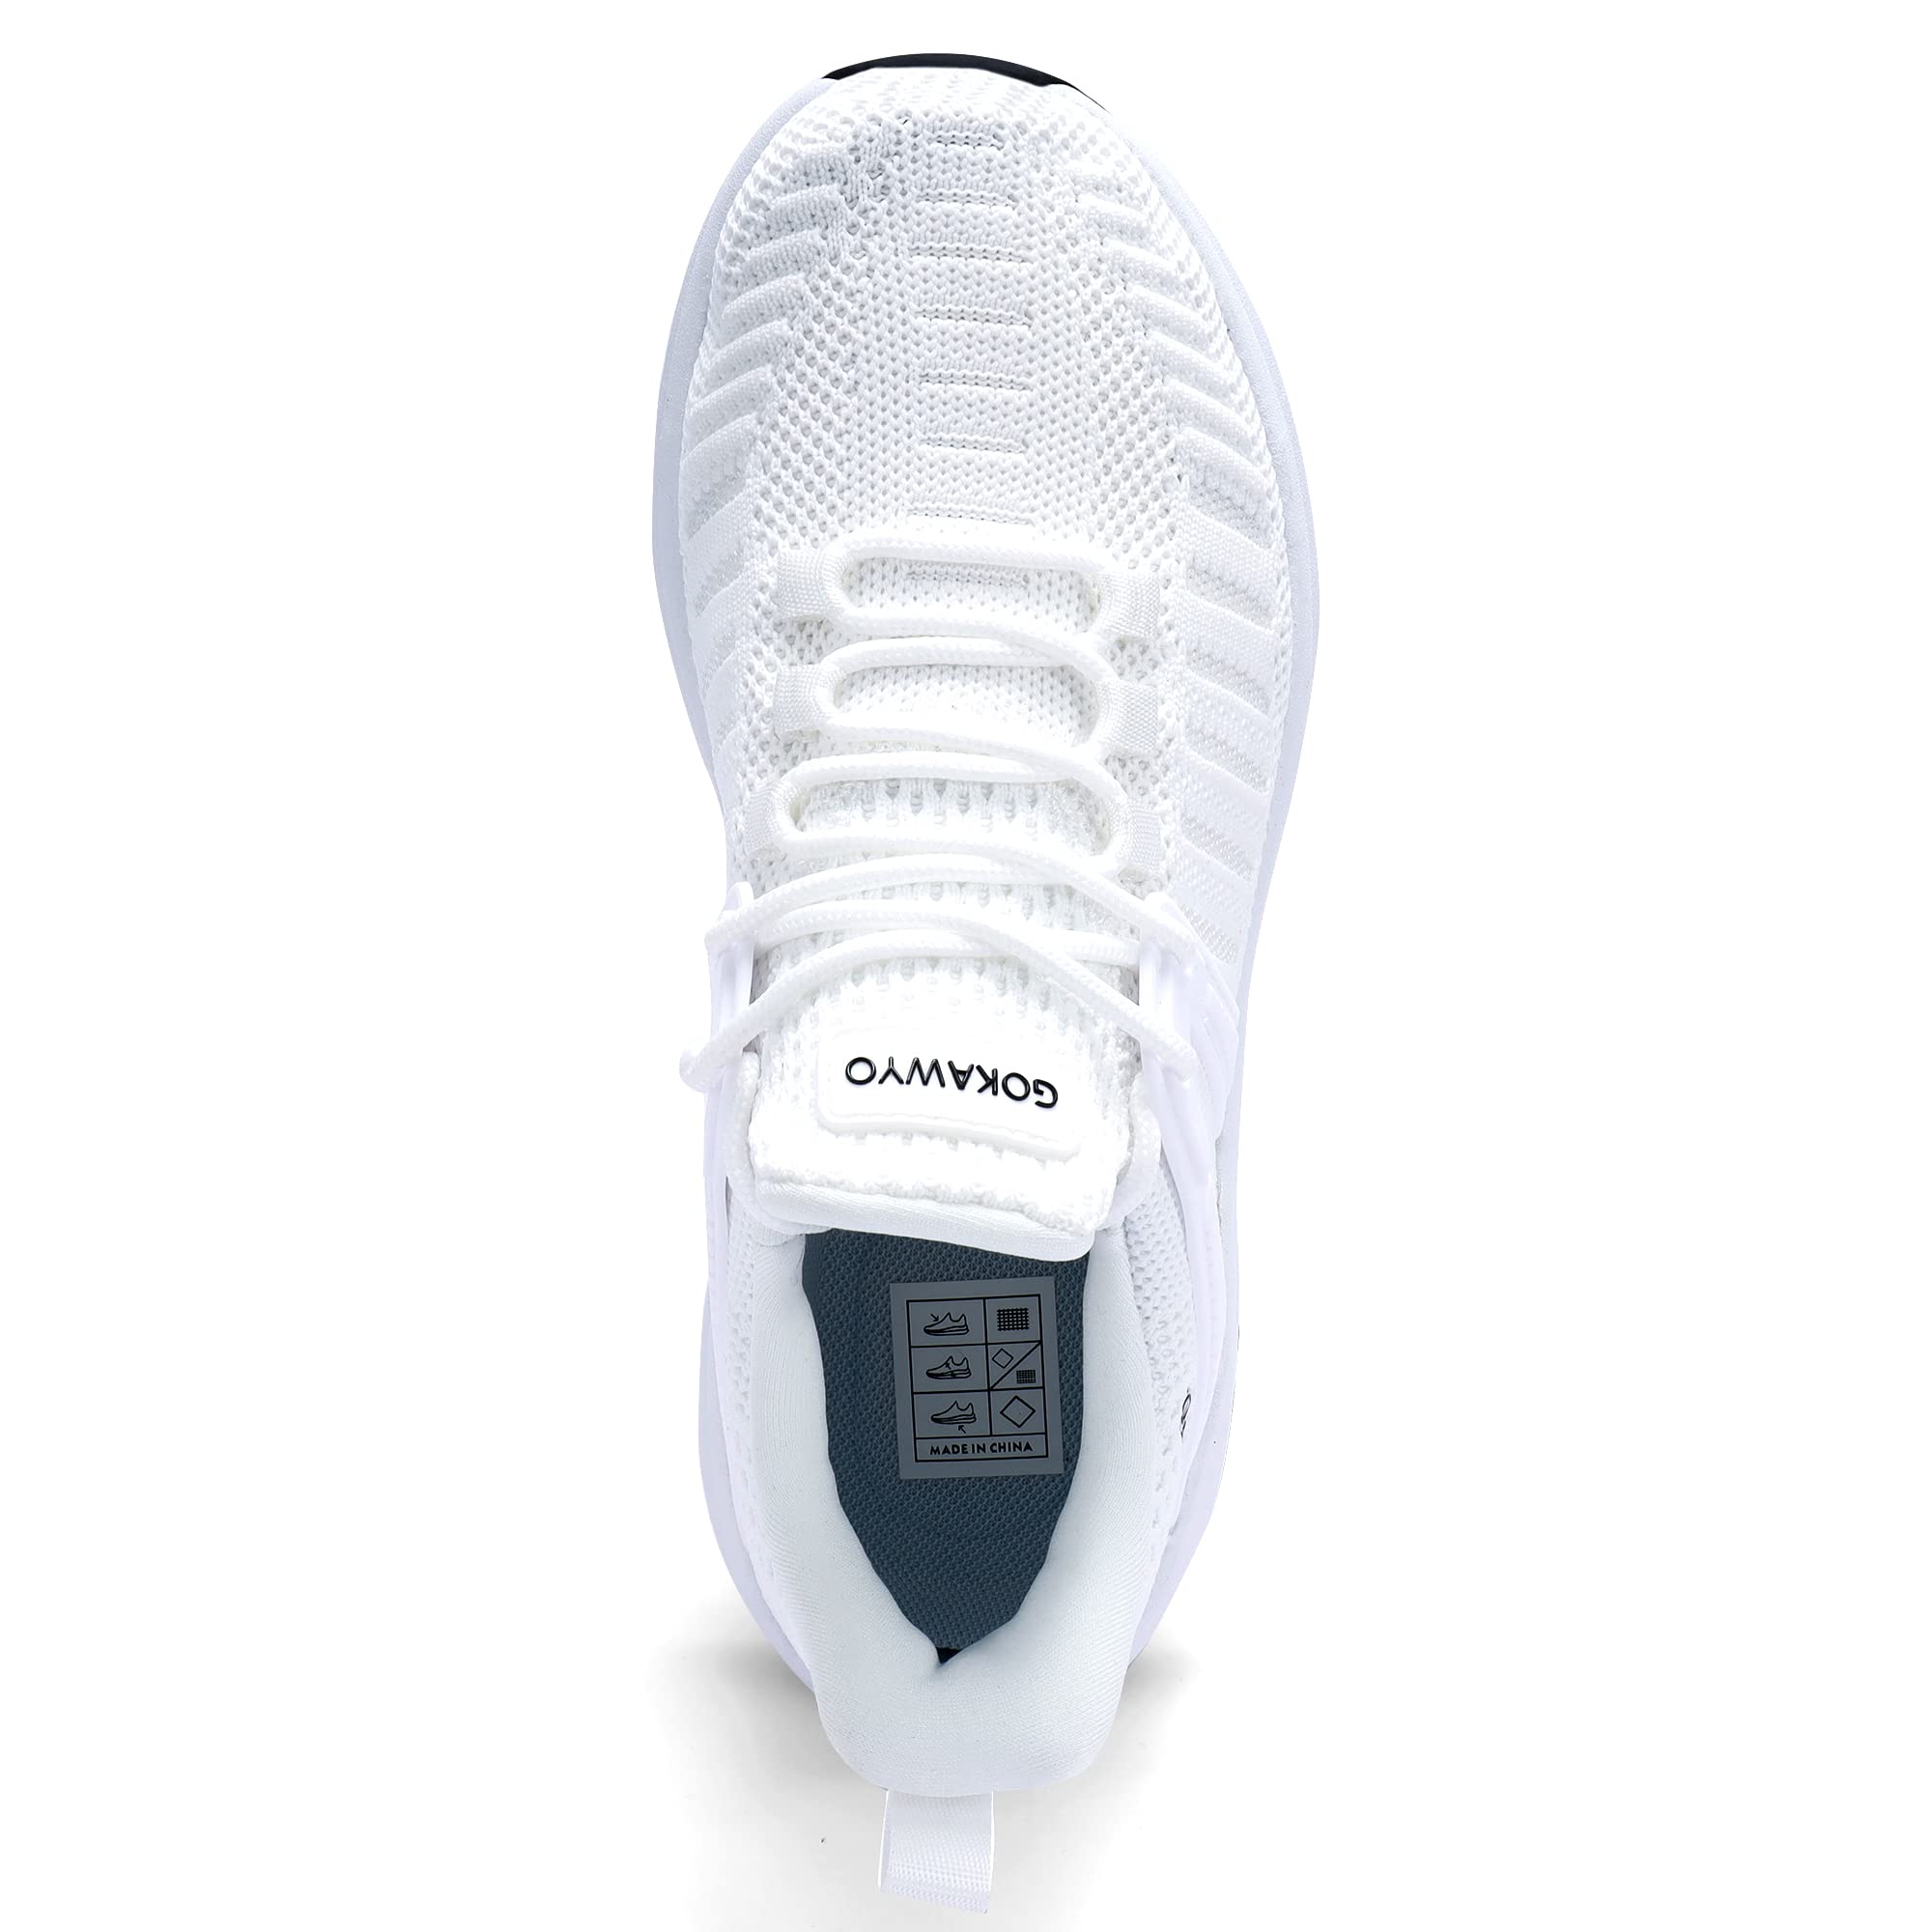 Gokawyo Womens Running Shoes Walking Slip on Breathable Sneaker for Women, White, US 8.5